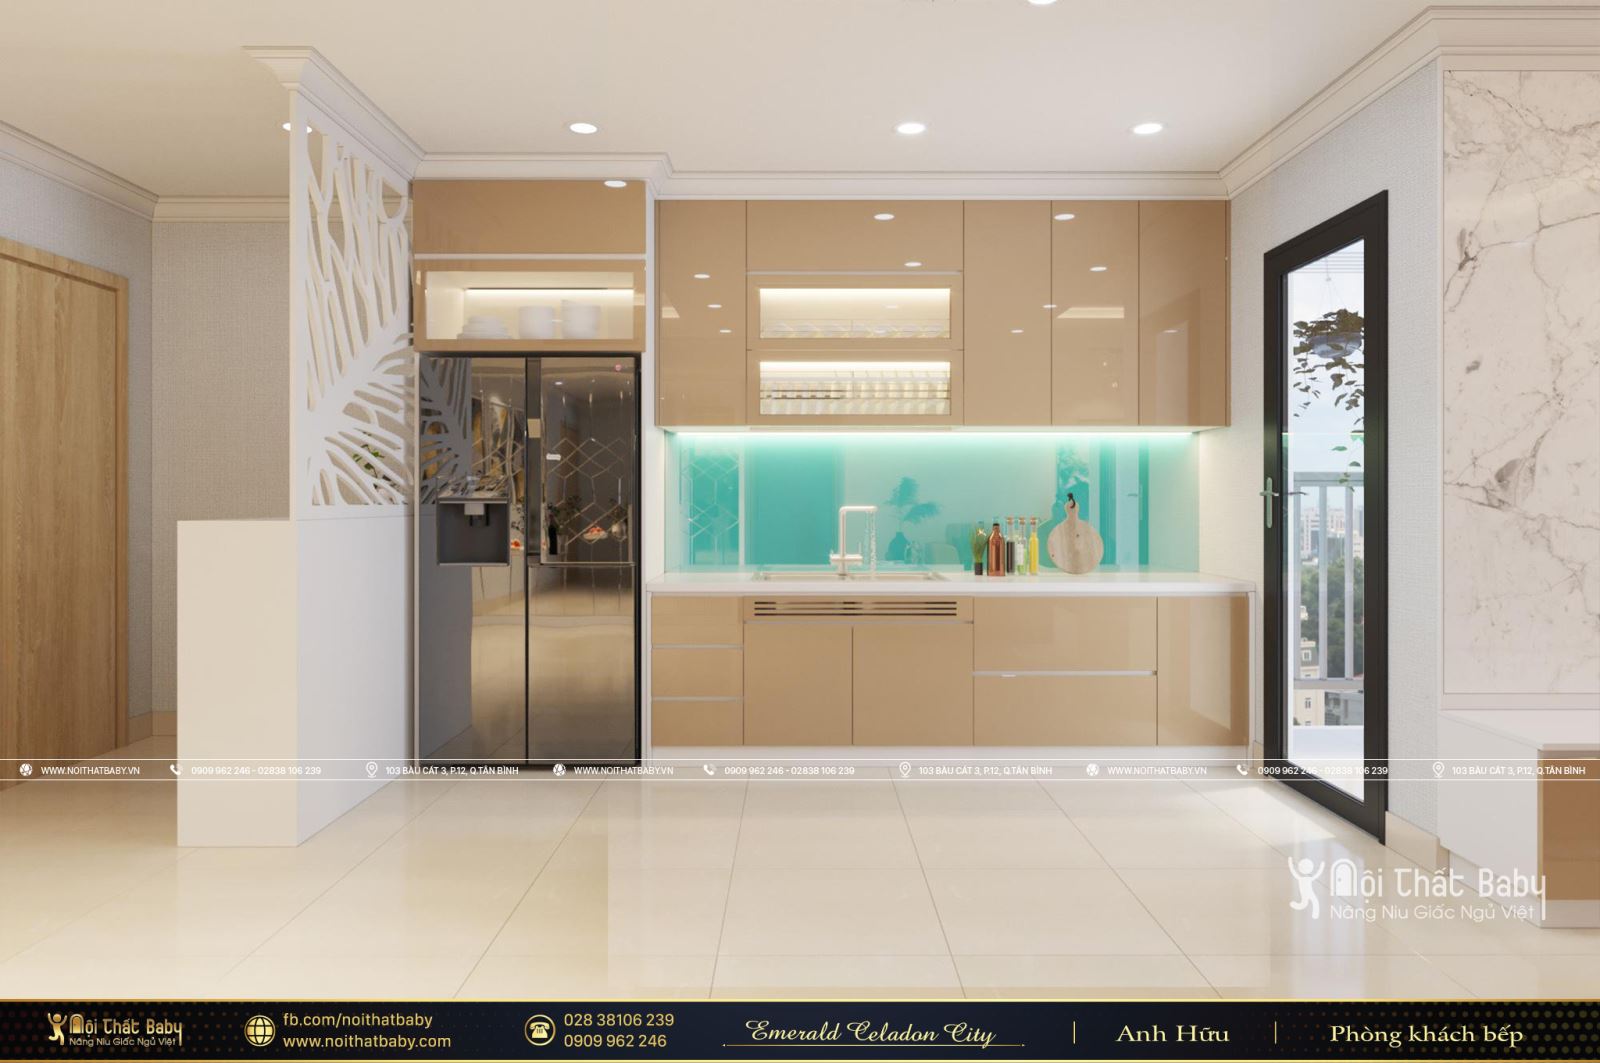 Nội thất phòng khách bếp hiện đại căn Vẻ đẹp cuốn hút từ mẫu thiết kế nội thất hiện đại căn Emerald Celadon City 104m2Celadon City 104m2